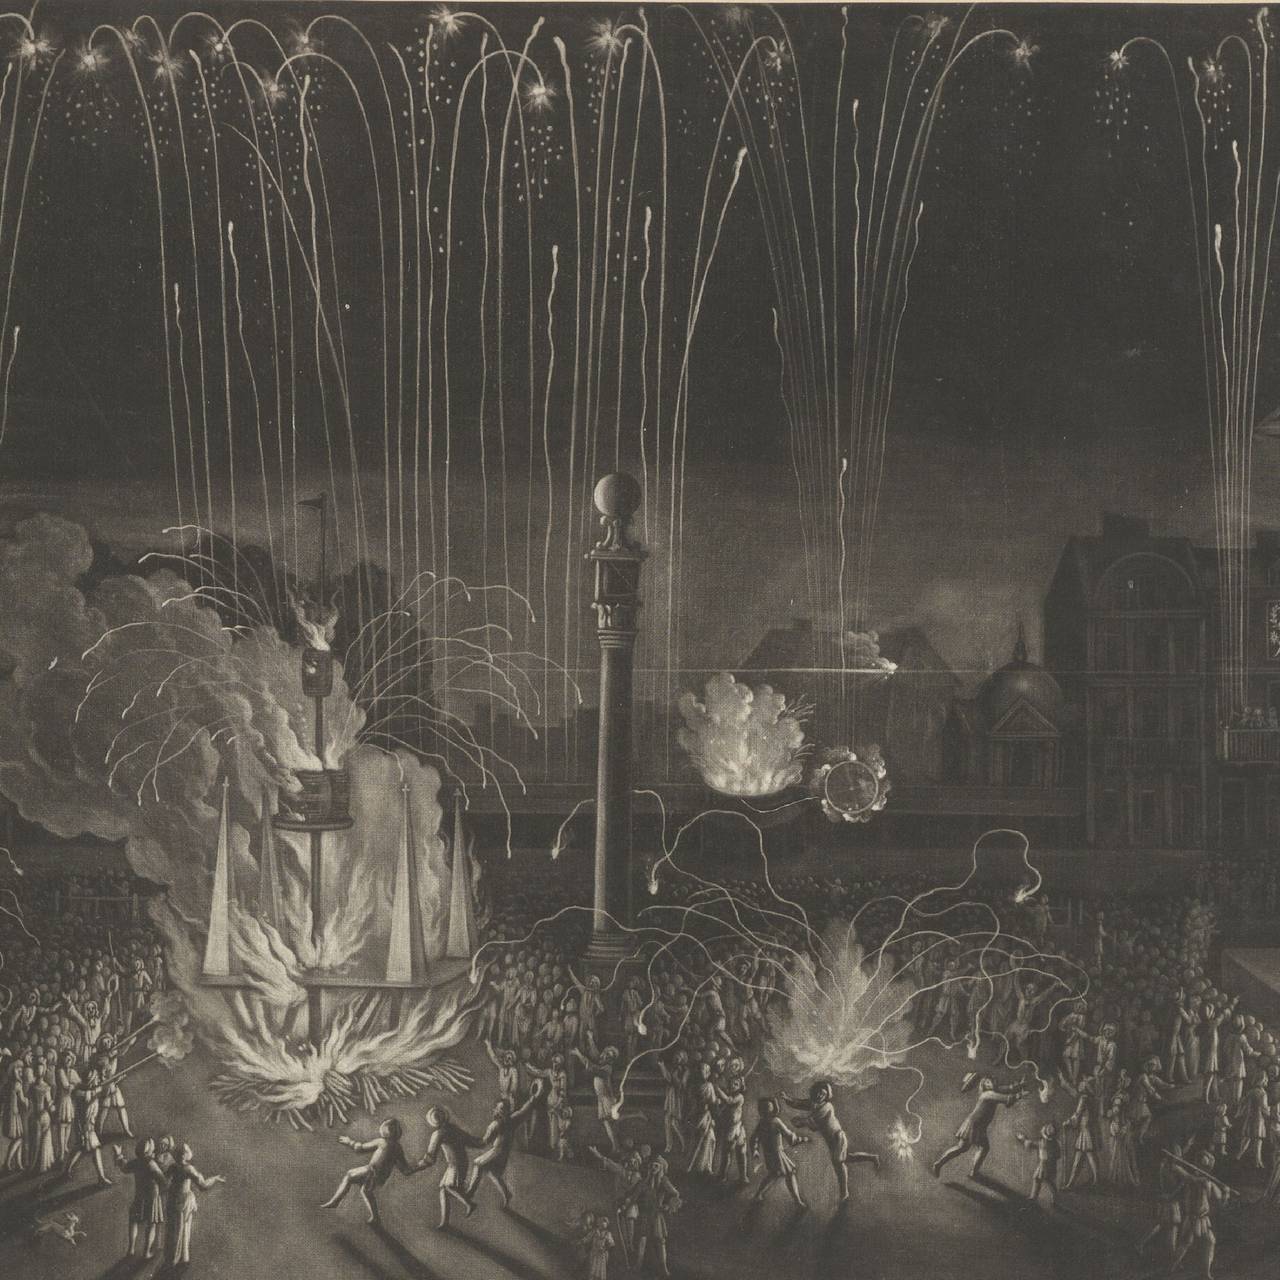 Firework in Covent Garden. Fra 1690.